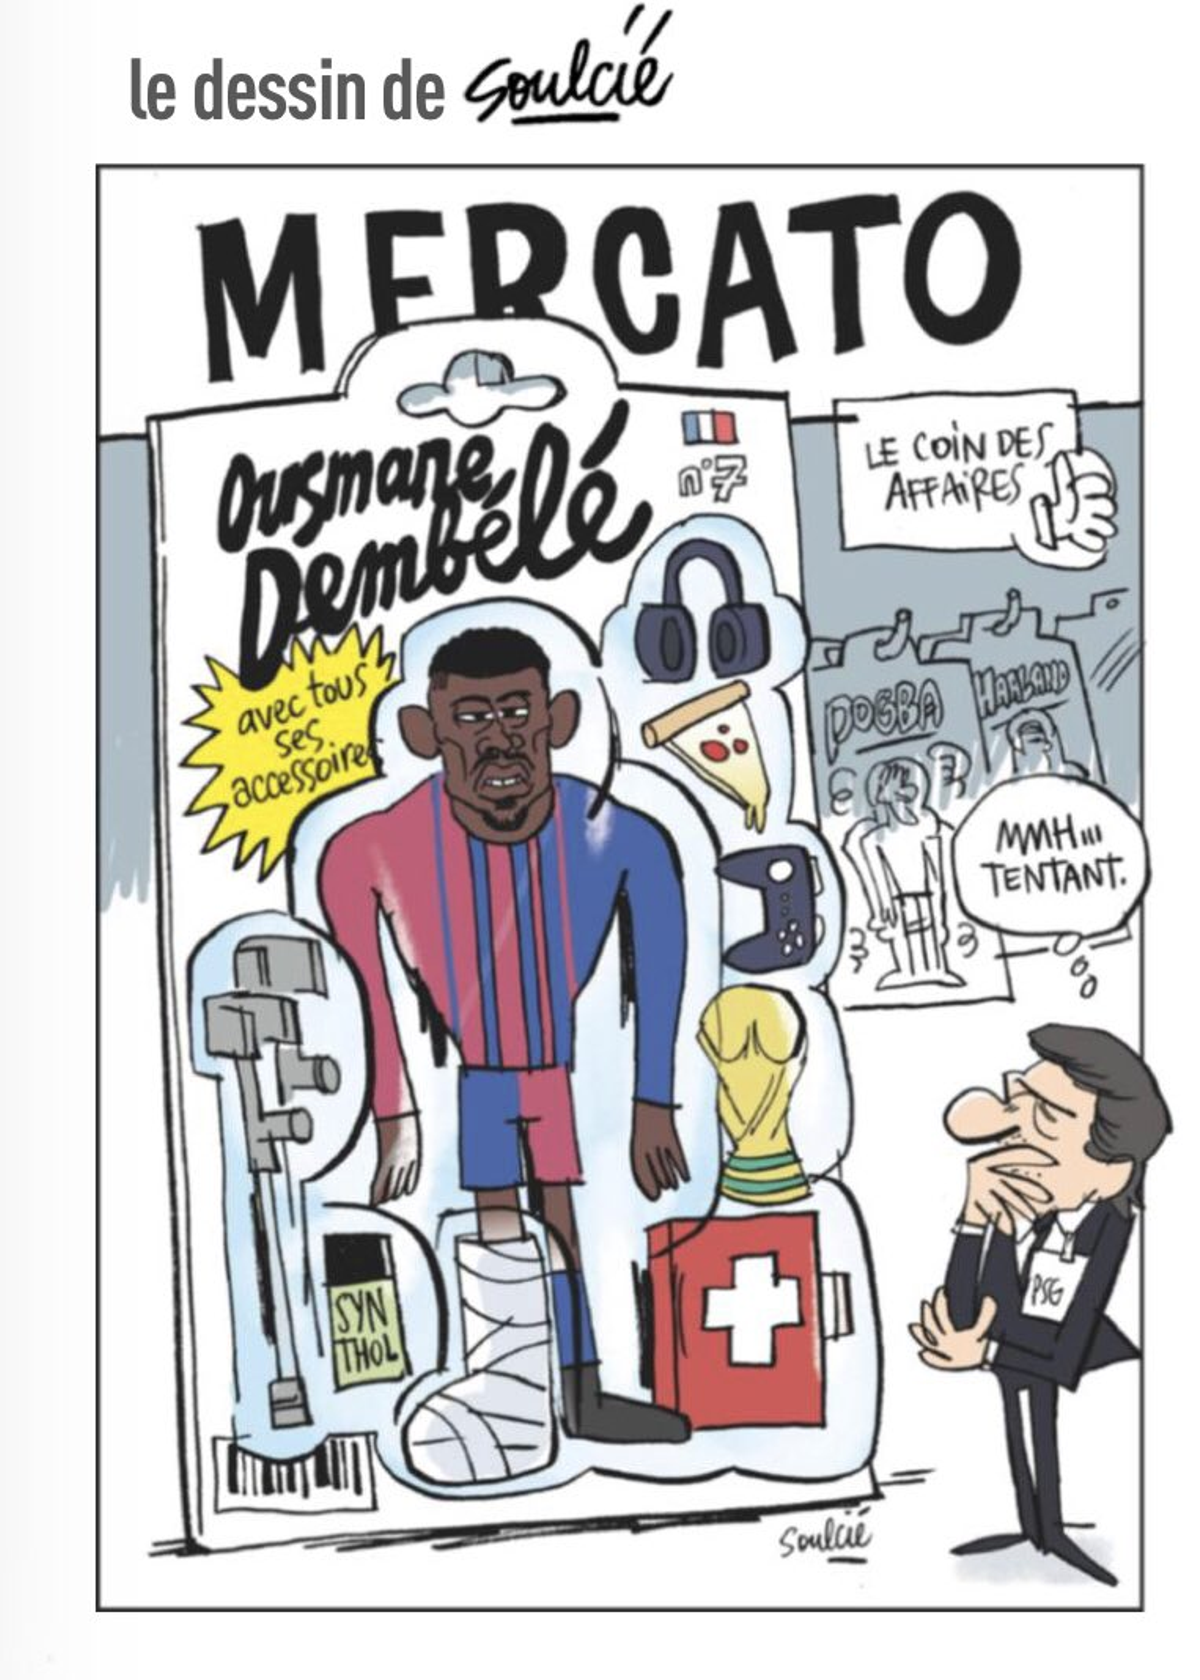 La caricatura del fichaje de Dembélé de l'Équipe